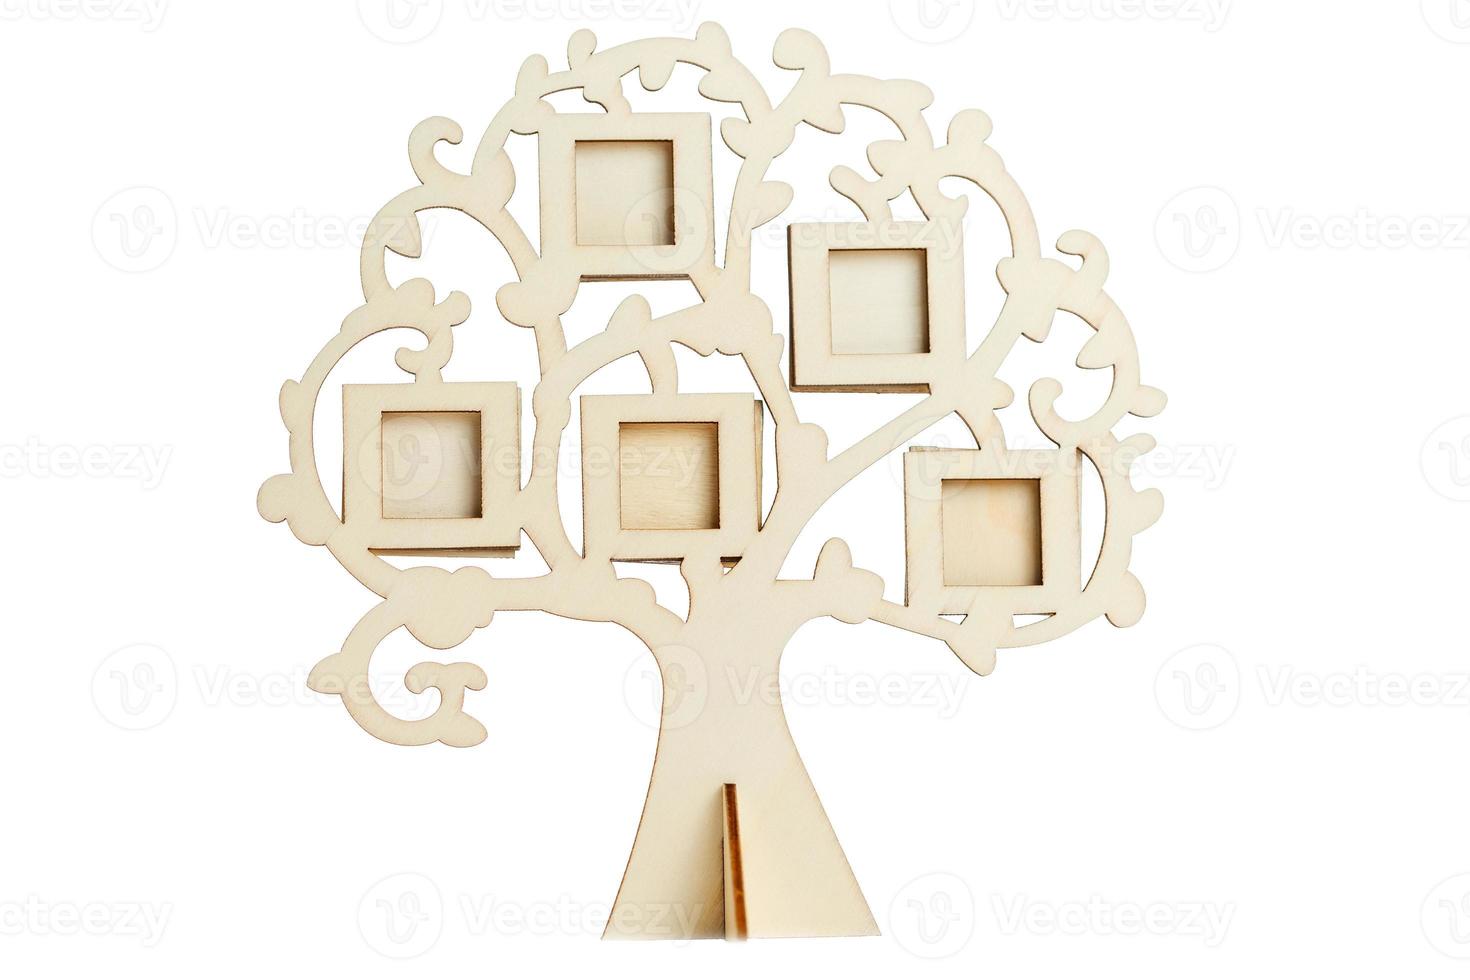 moldura de madeira da árvore genealógica em um fundo branco foto